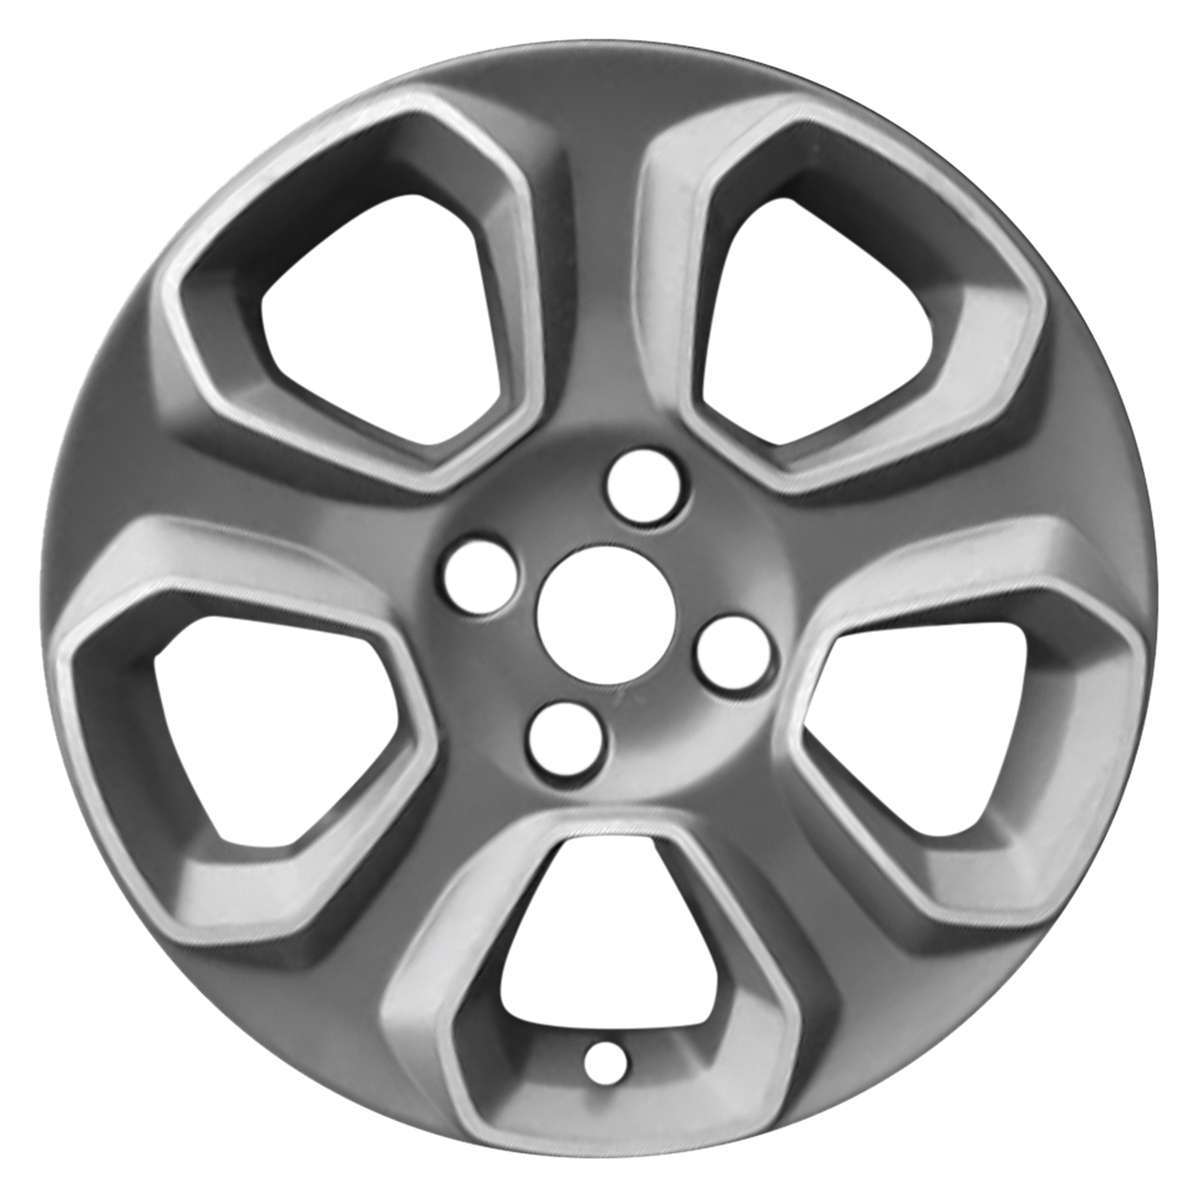 2021 Ford Ecosport 16" OEM Wheel Rim W10148C